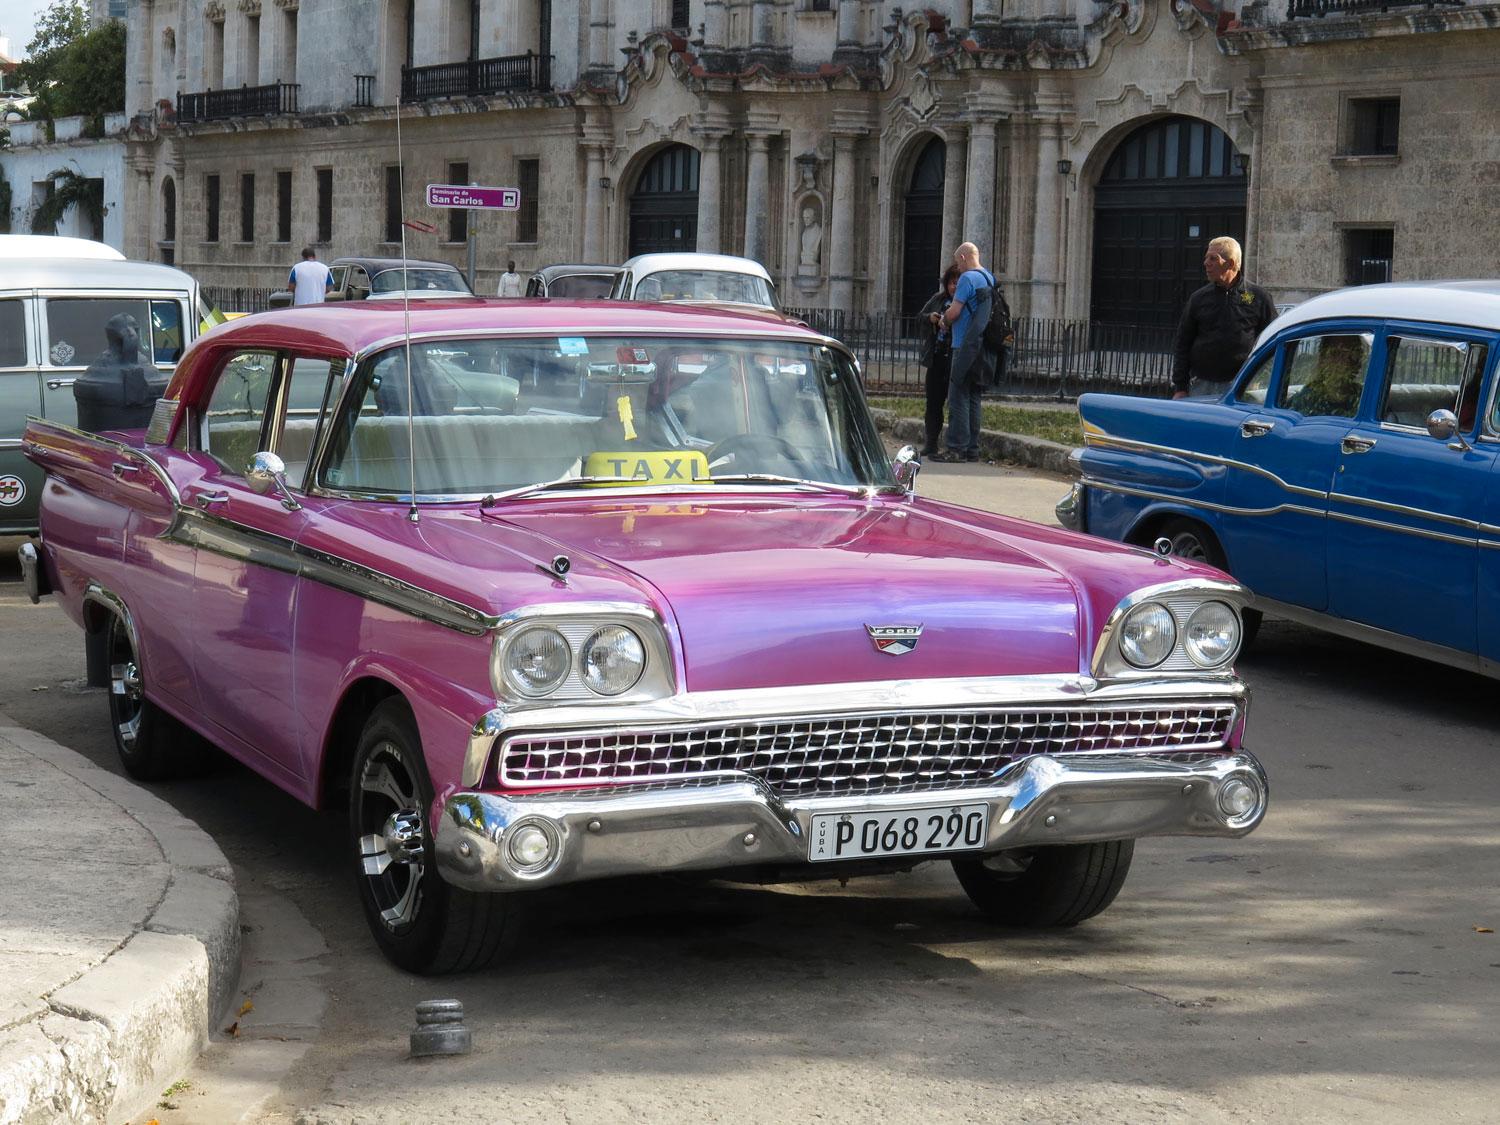 En del bilar är renoverade till riktigt fint skick, som den här taxin från 1959, en Ford Galaxie Fairlane, enligt de kromade emblemen som för ovanlighetens skull sitter kvar på bilen.